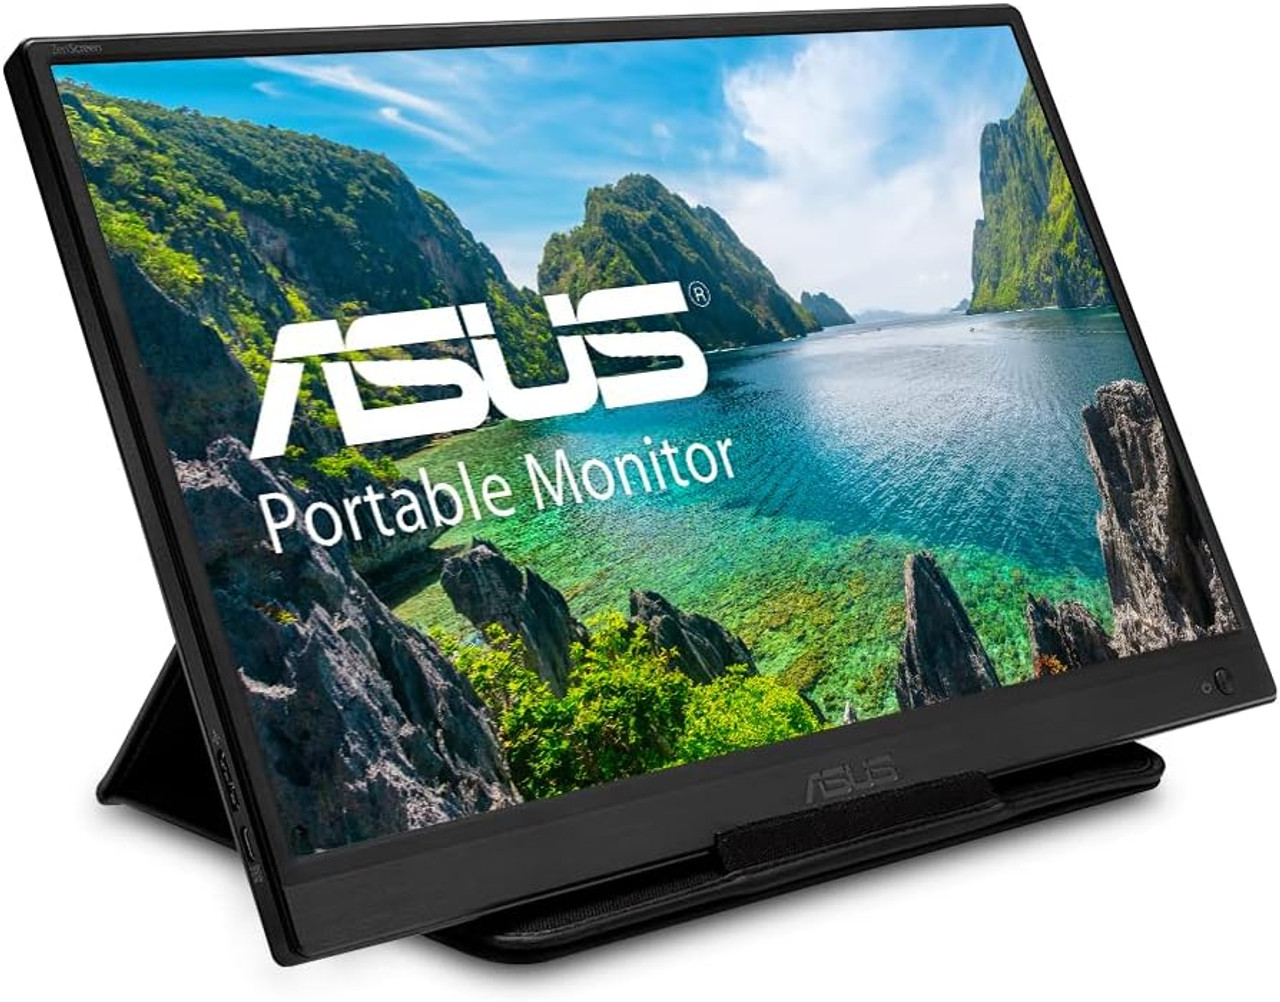 Asus Zenscreen Portable USB Monitor